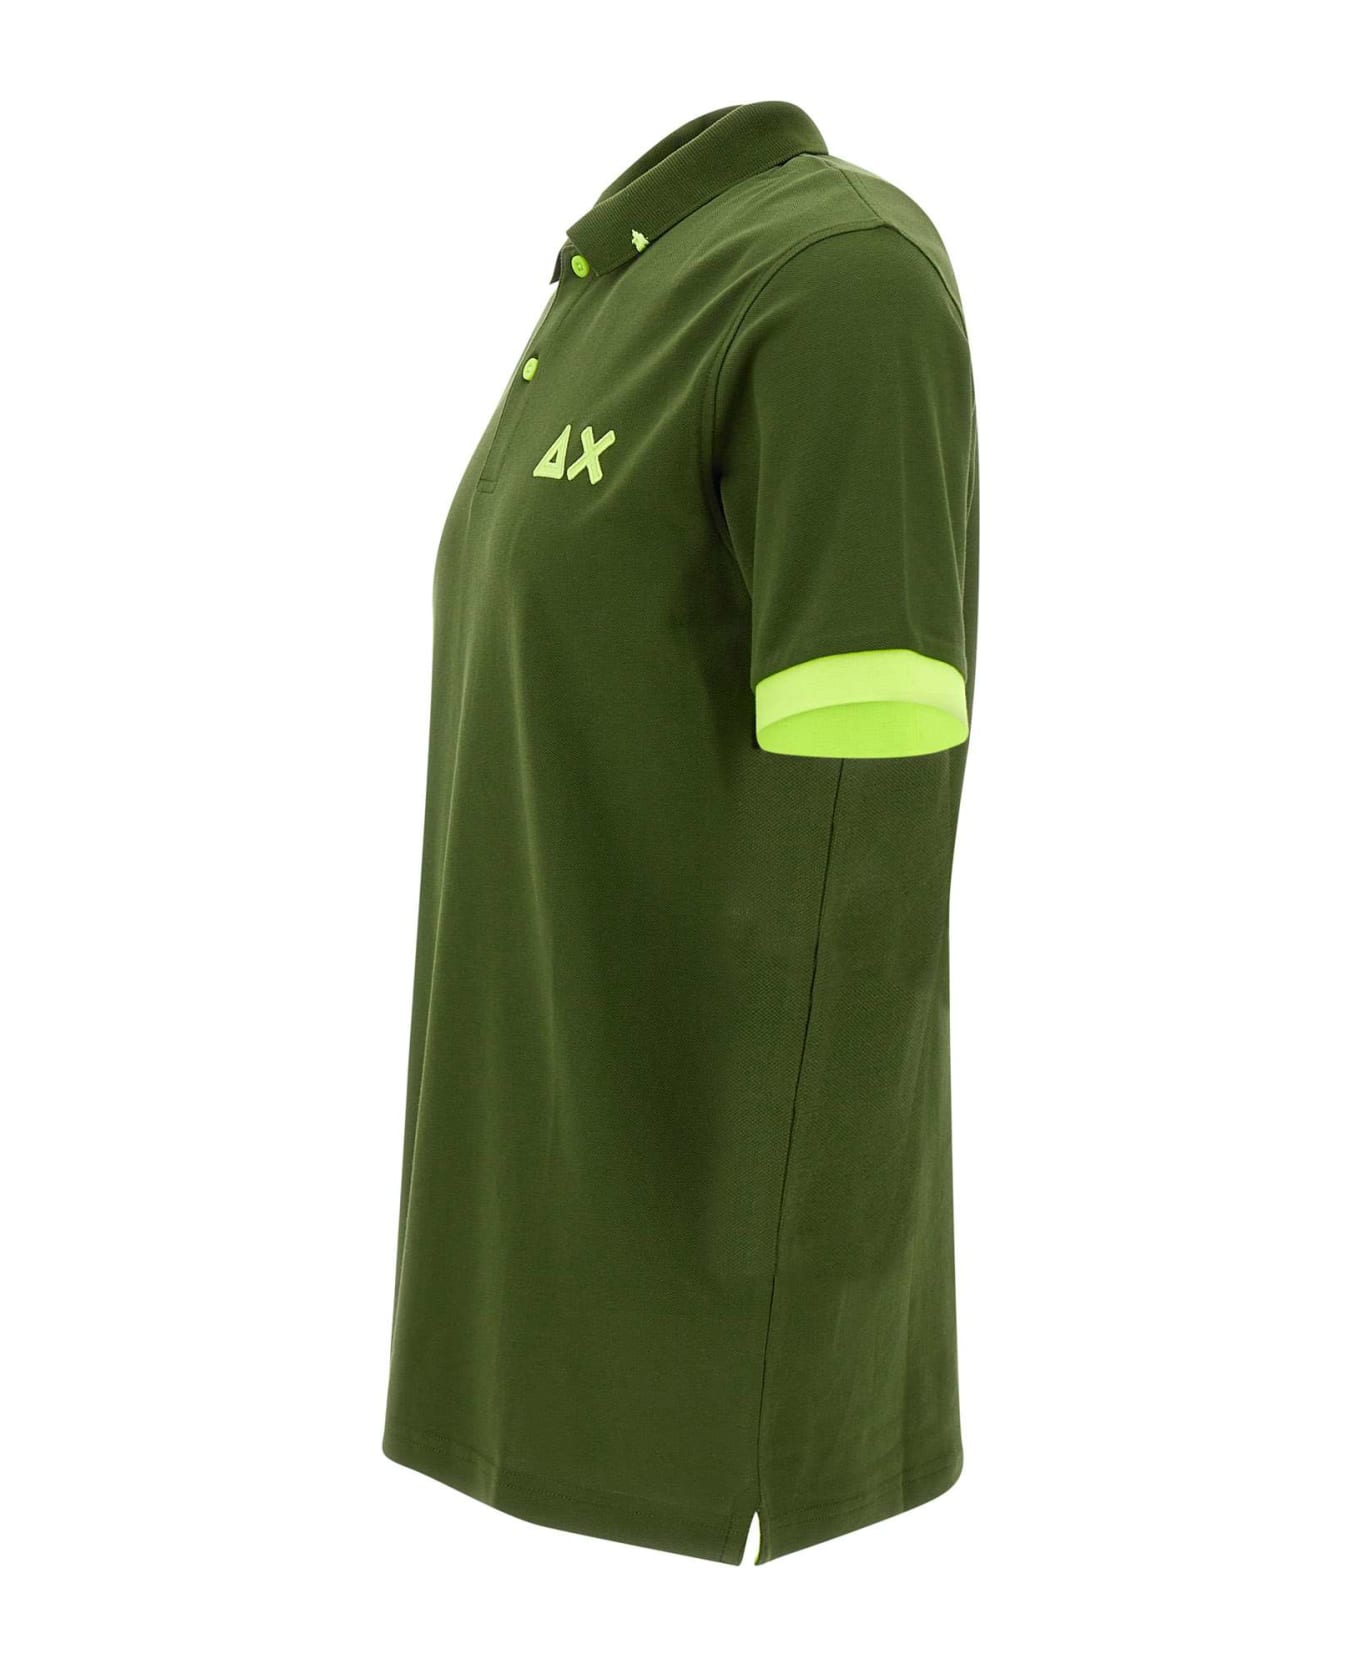 Sun 68 "fluo Logo" Cotton Polo Shirt - GREEN